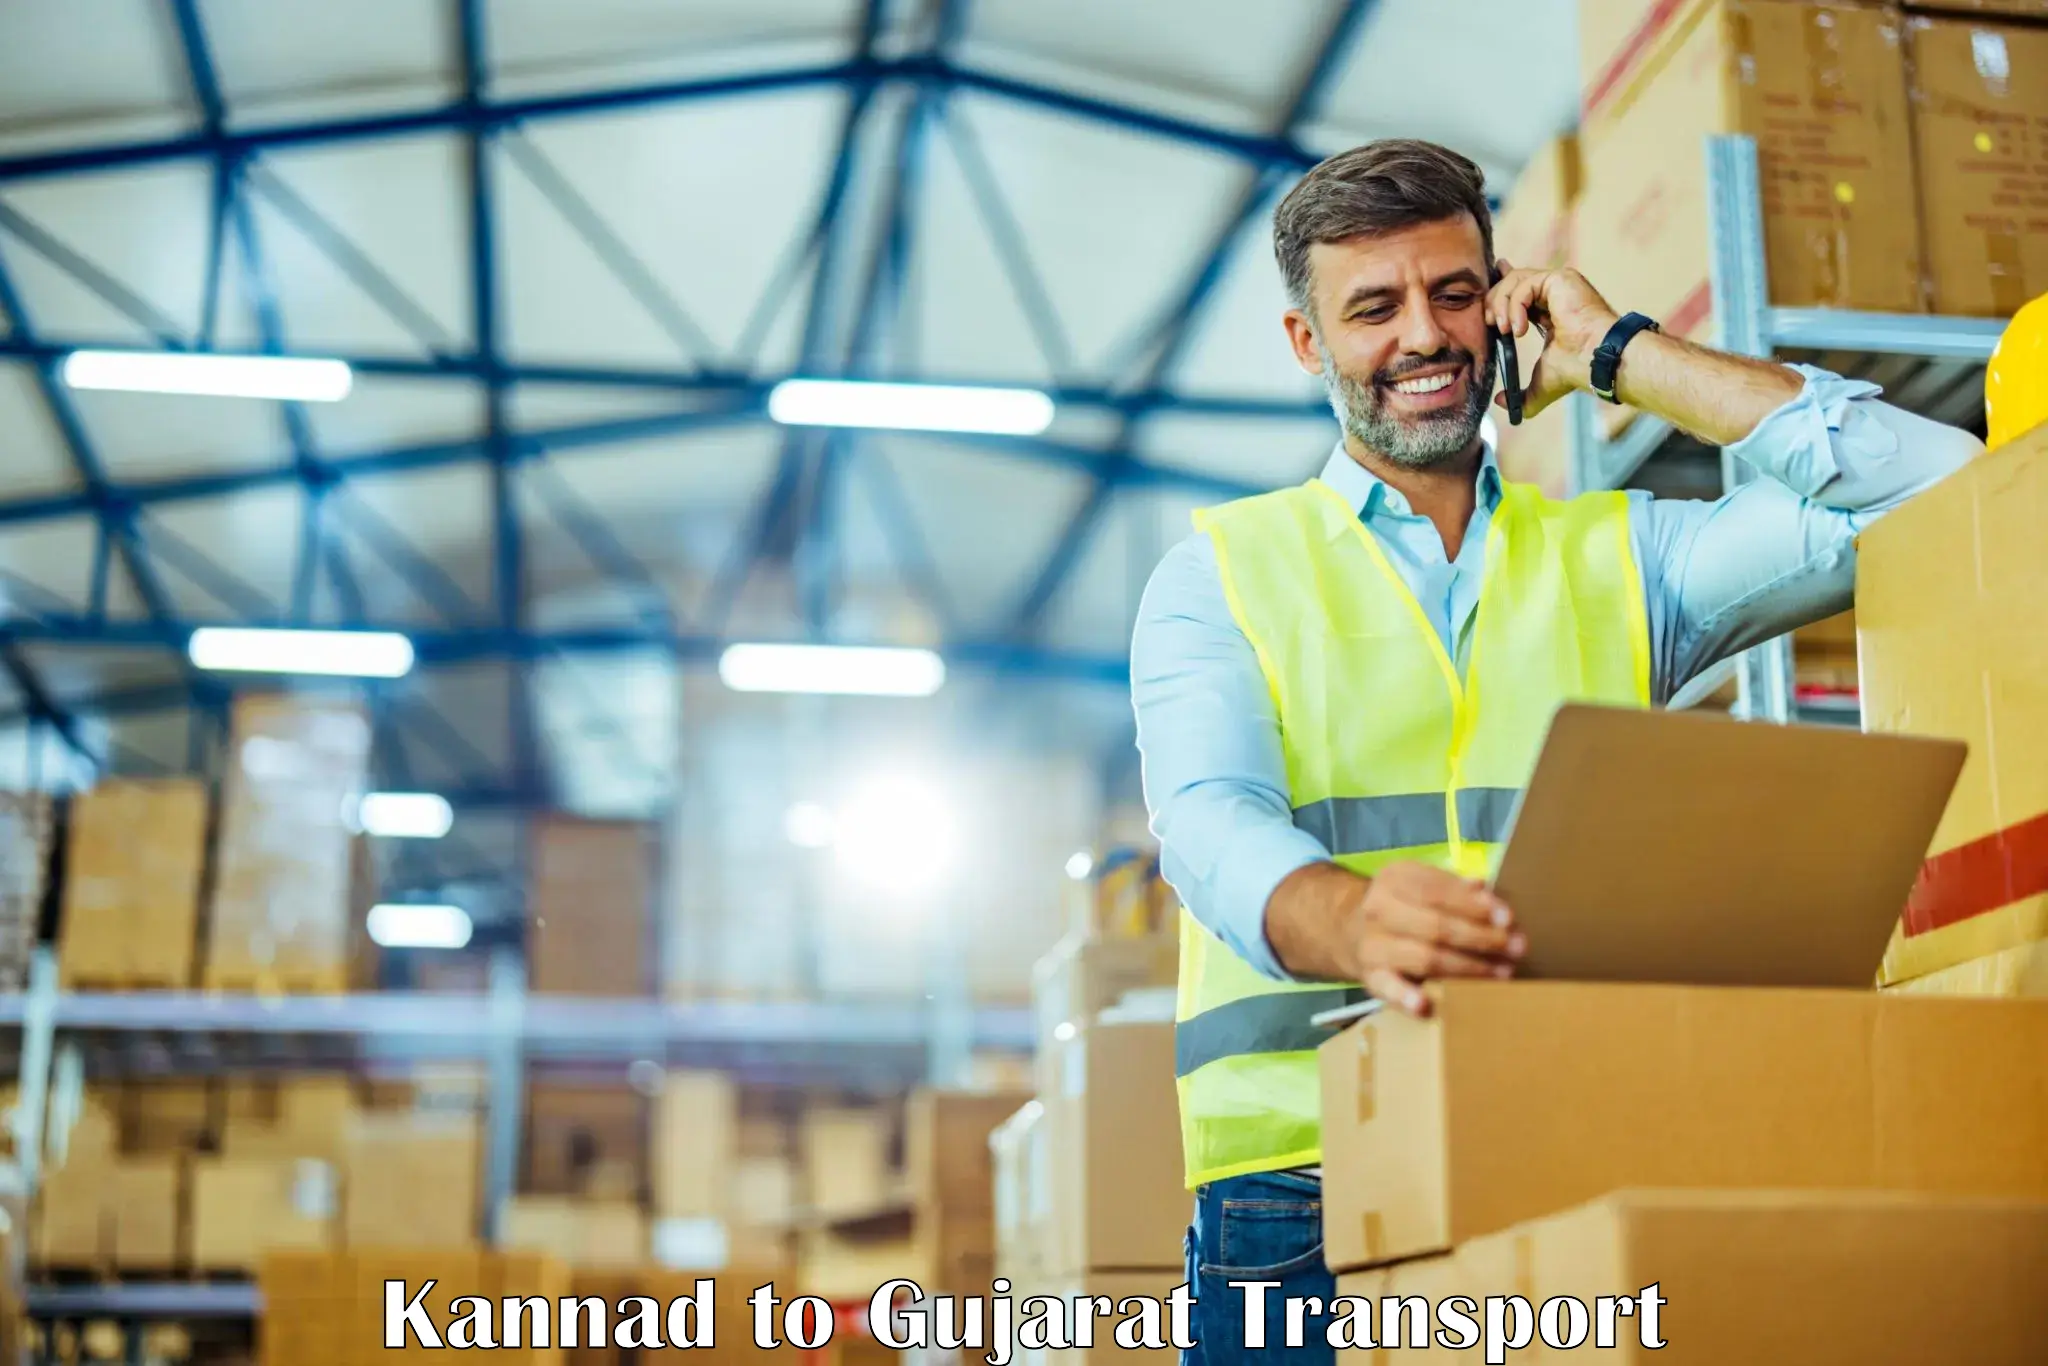 Cargo transportation services Kannad to Vadnagar